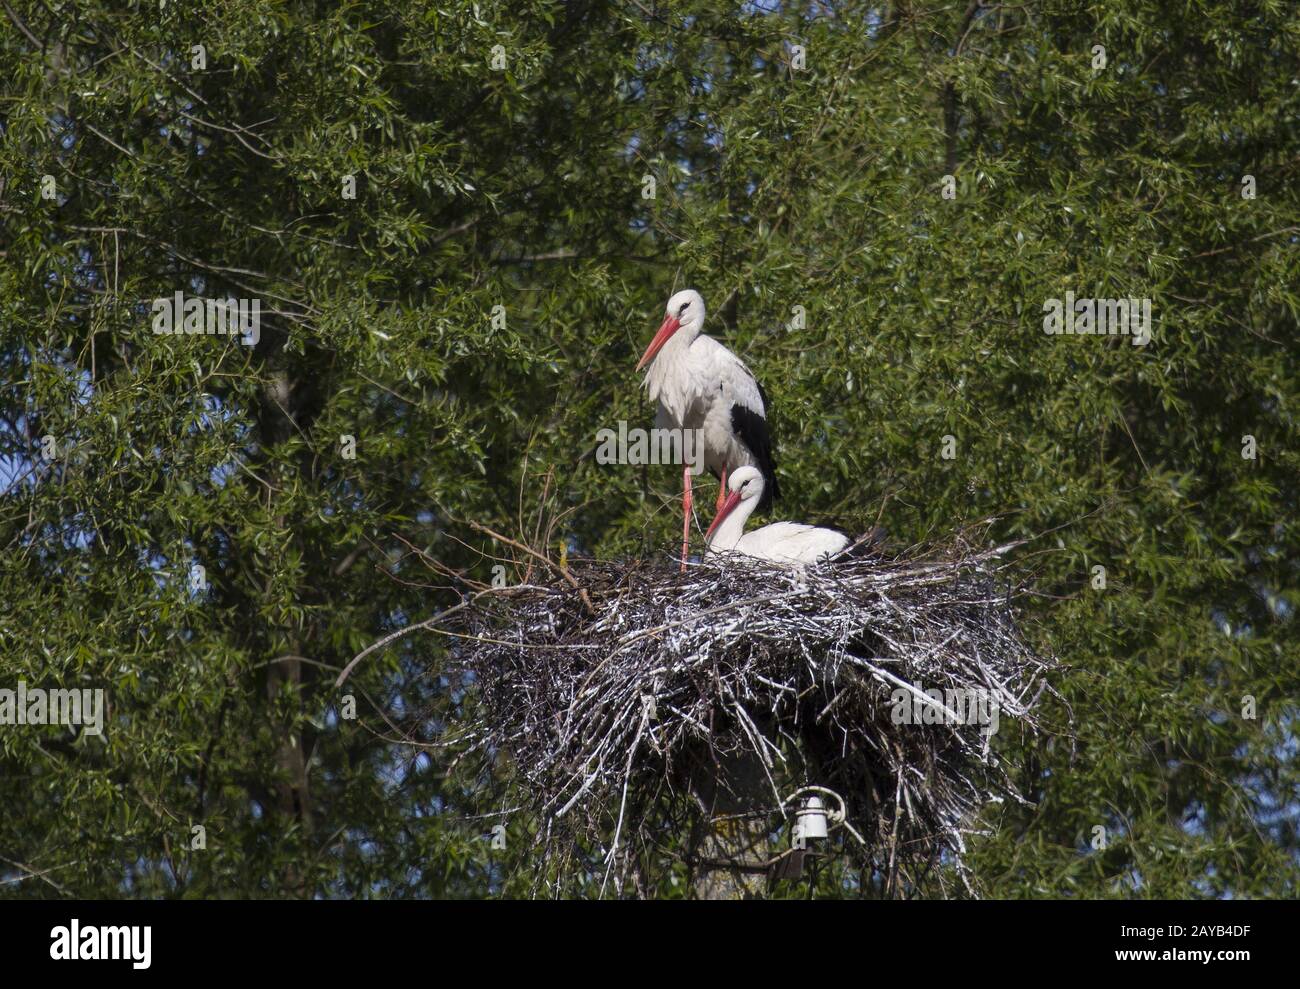 Ventės ragas, White Stork, Lithuania, Baltic States, East Europe Stock Photo